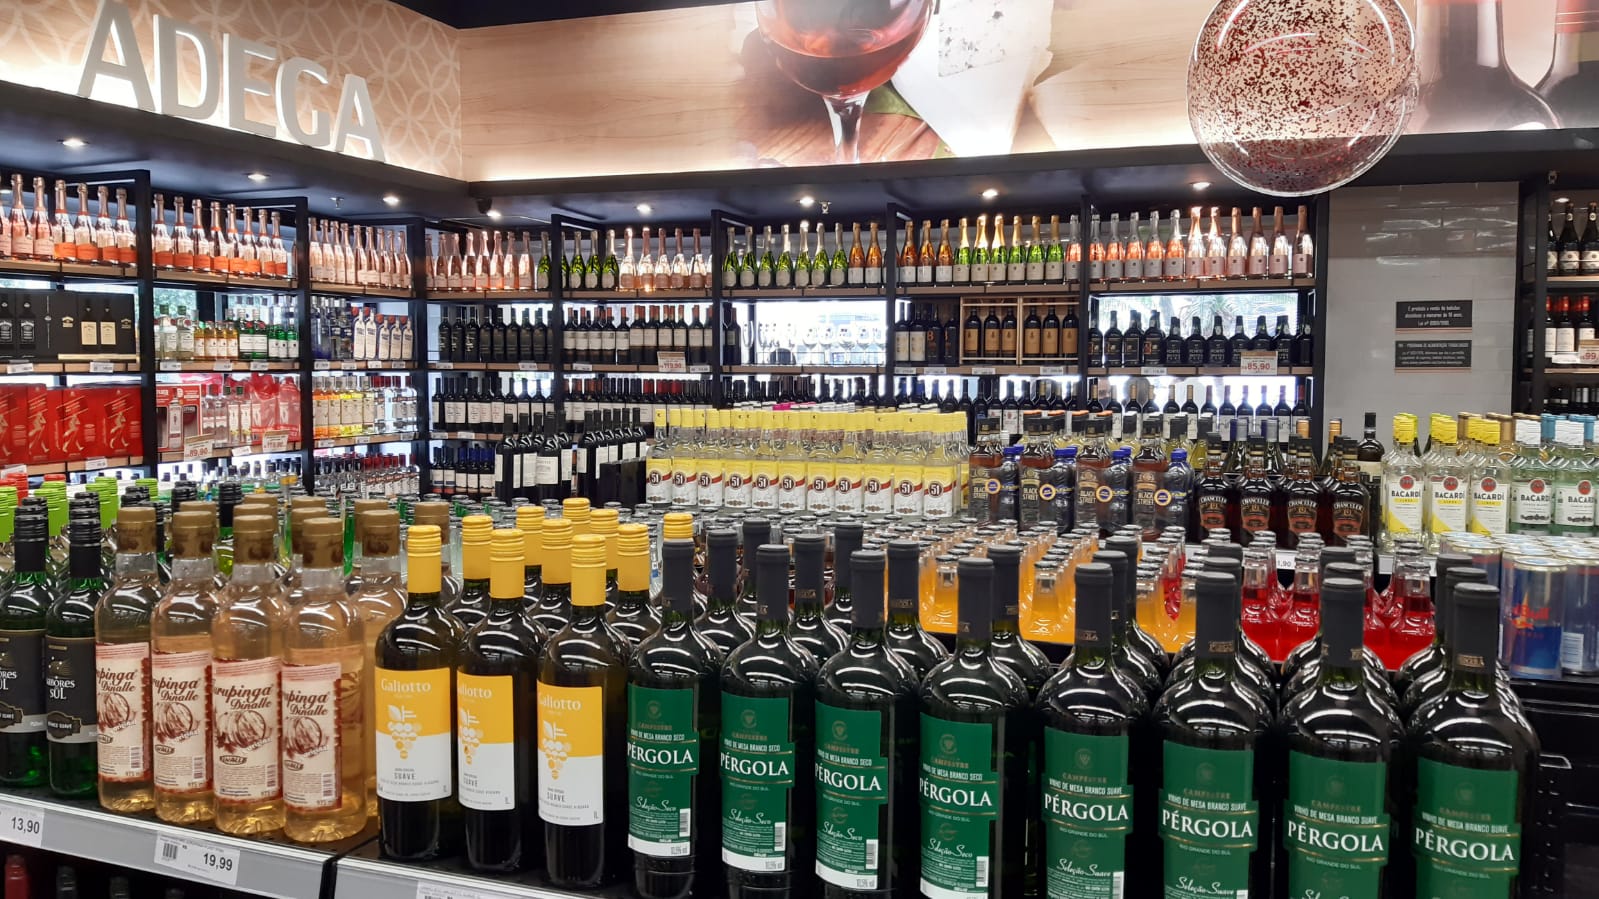 Supermarket São Conrado